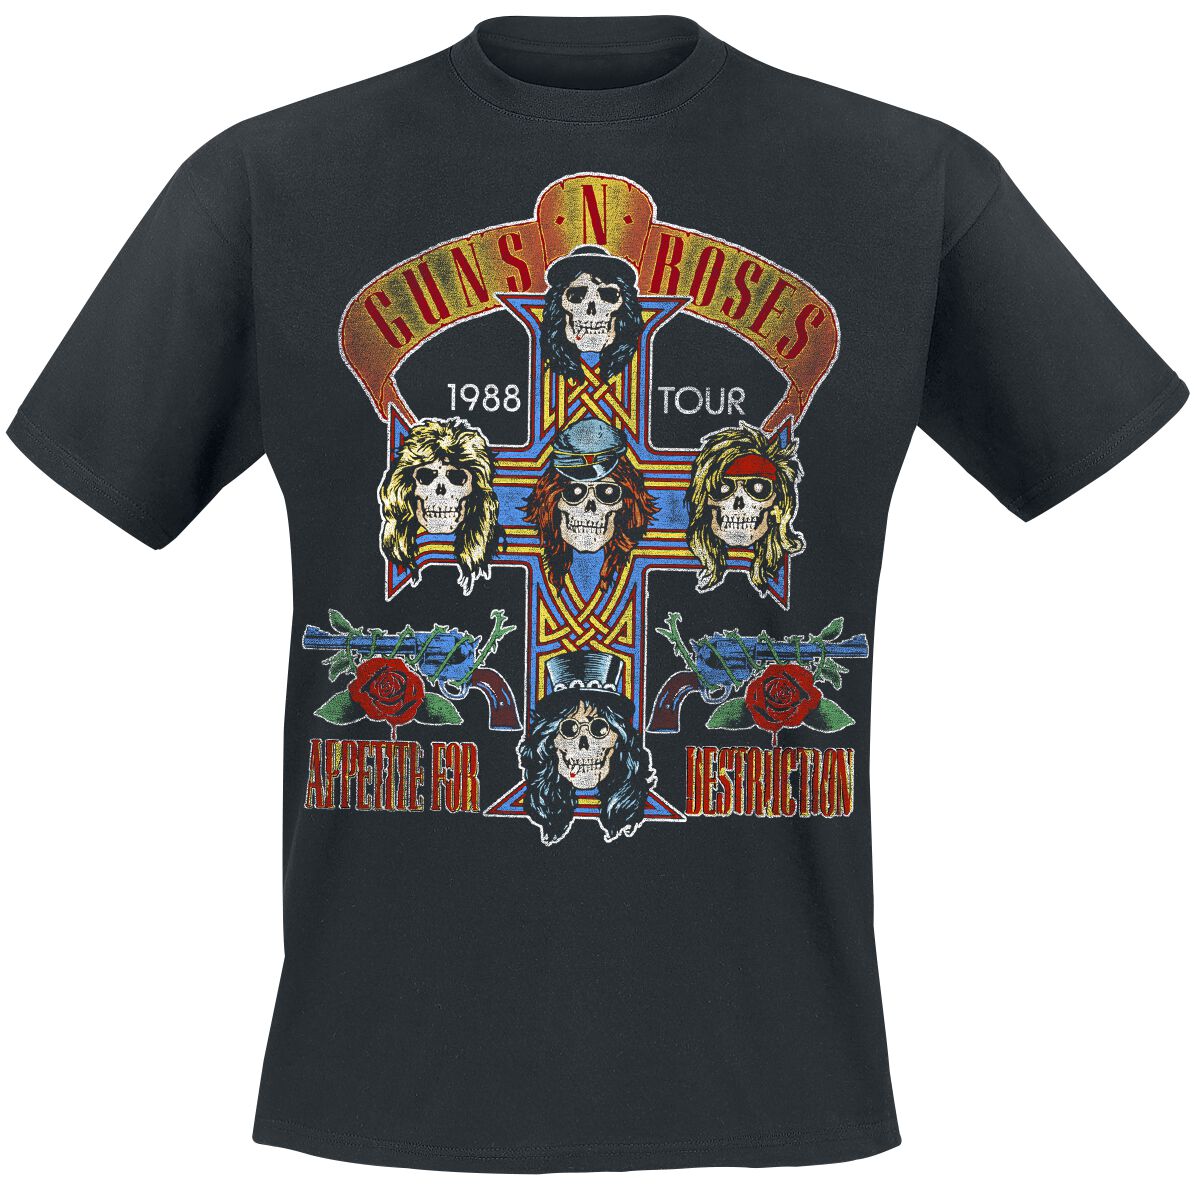 Guns N' Roses T-Shirt - Tour 1988 - XXL bis 5XL - für Männer - Größe XXL - schwarz  - Lizenziertes Merchandise! von Guns N' Roses